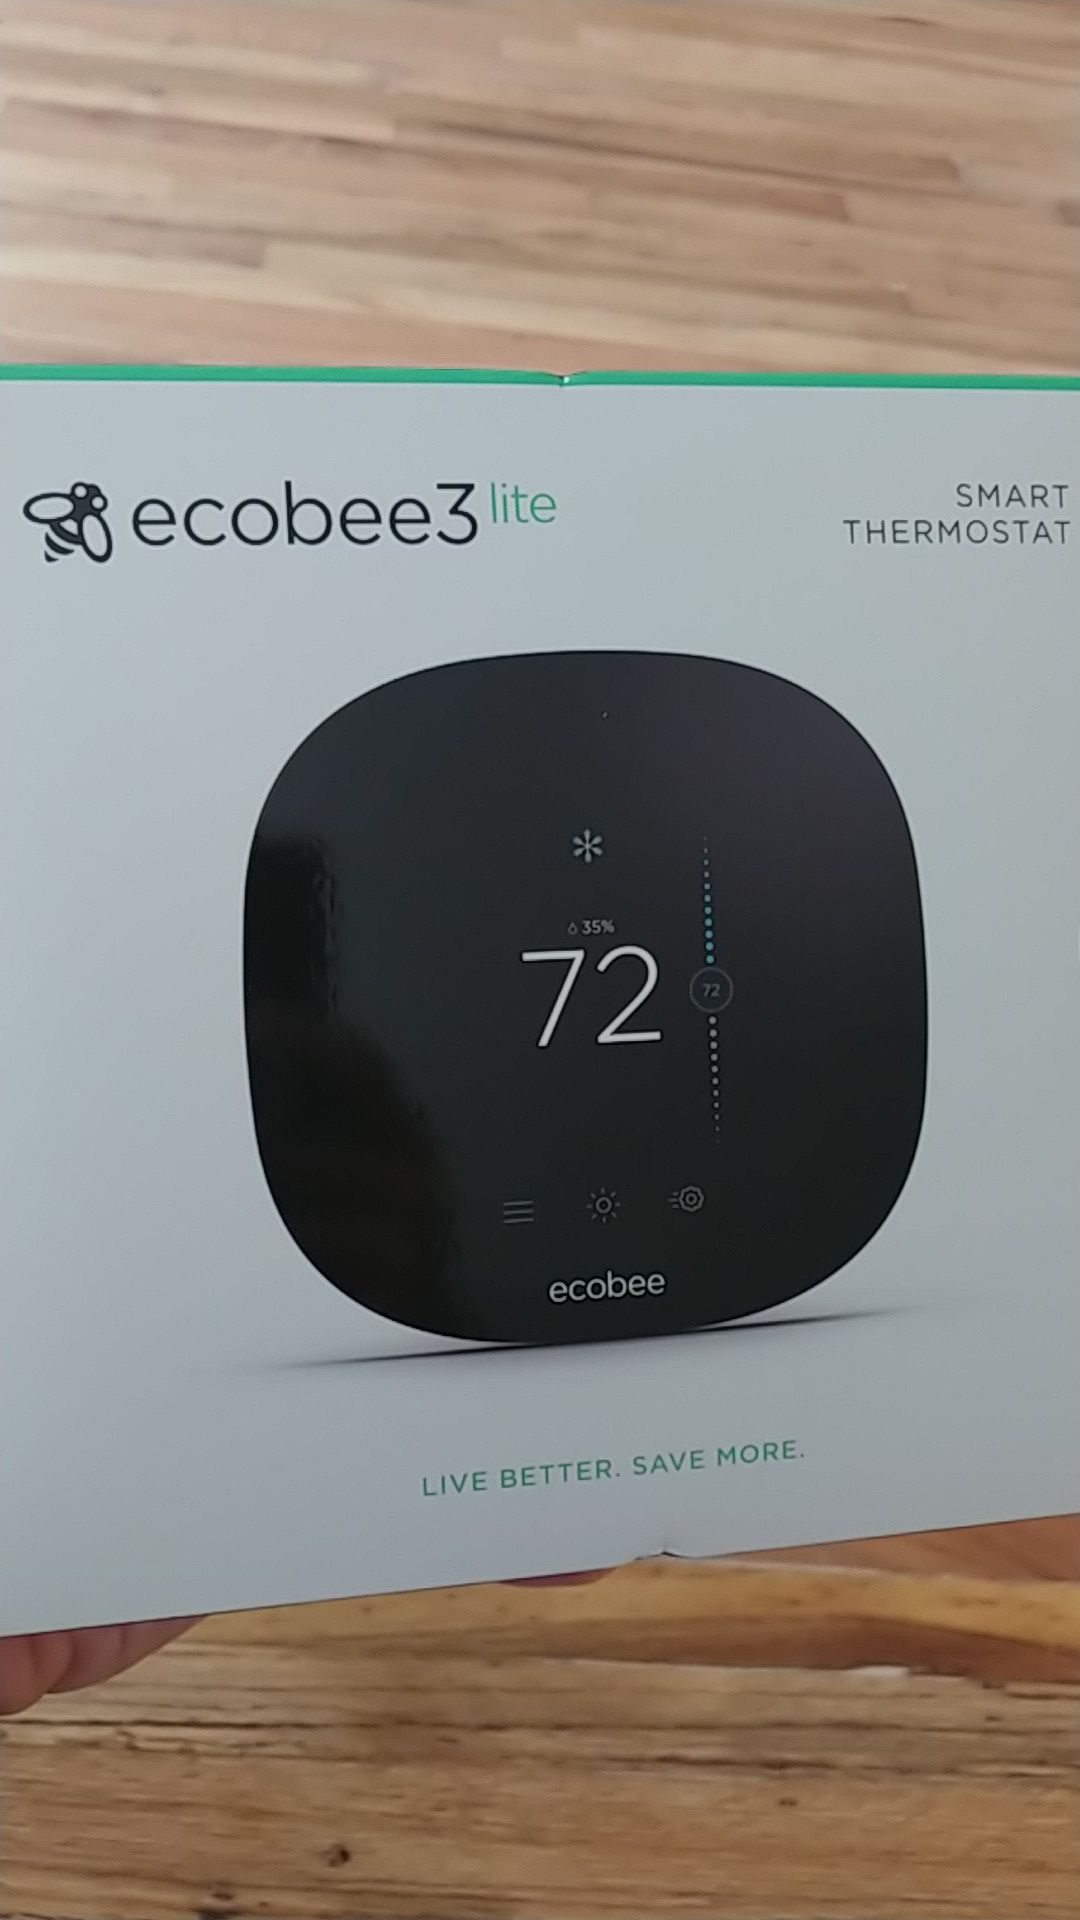 EcoBee 3 Lite Smart Thermostat